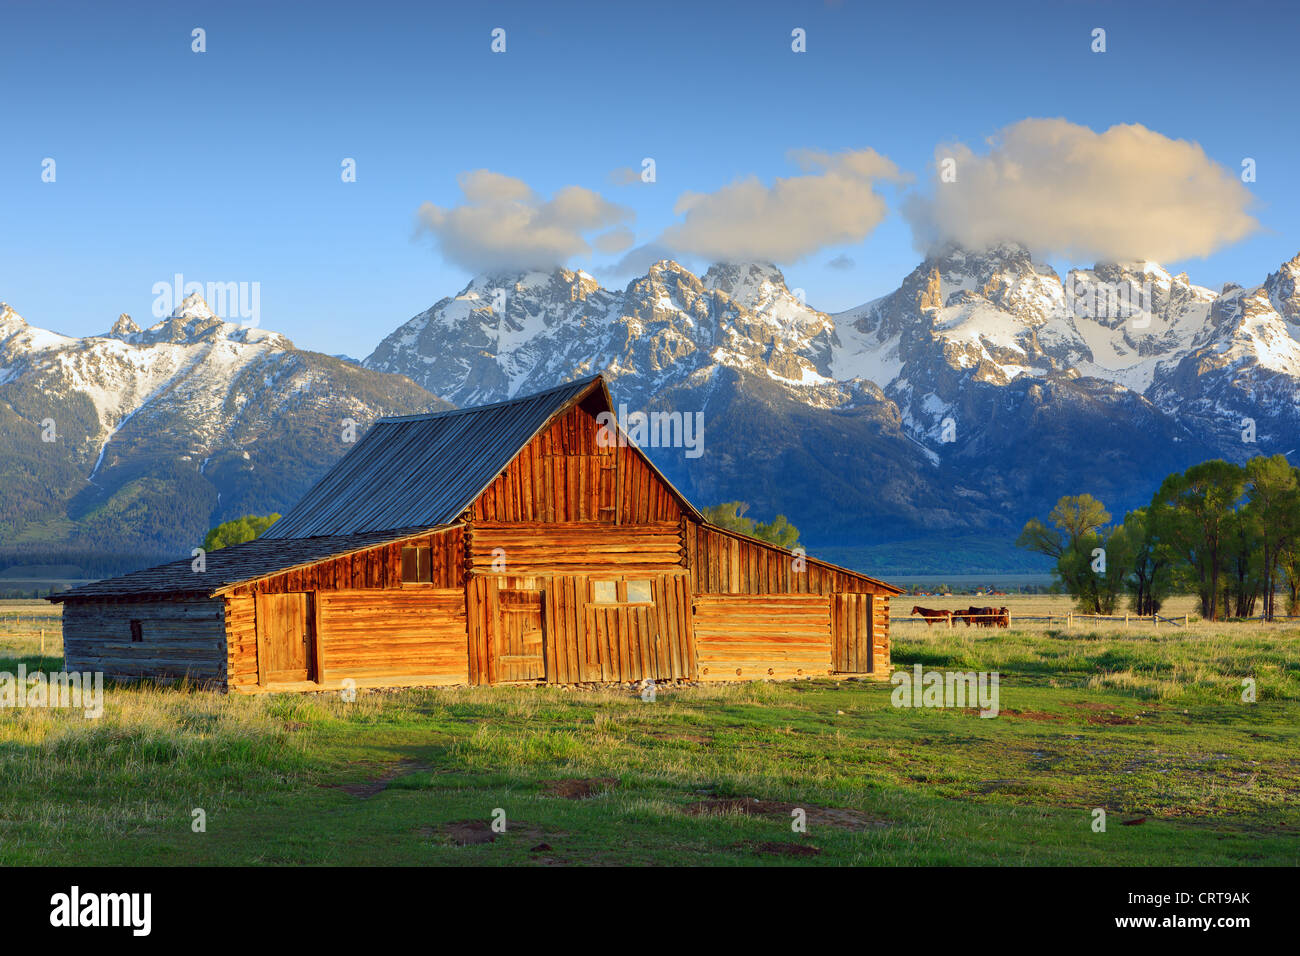 Thomas A. Moulton's barn on Mormon Row in Grand Teton National Park Stock Photo